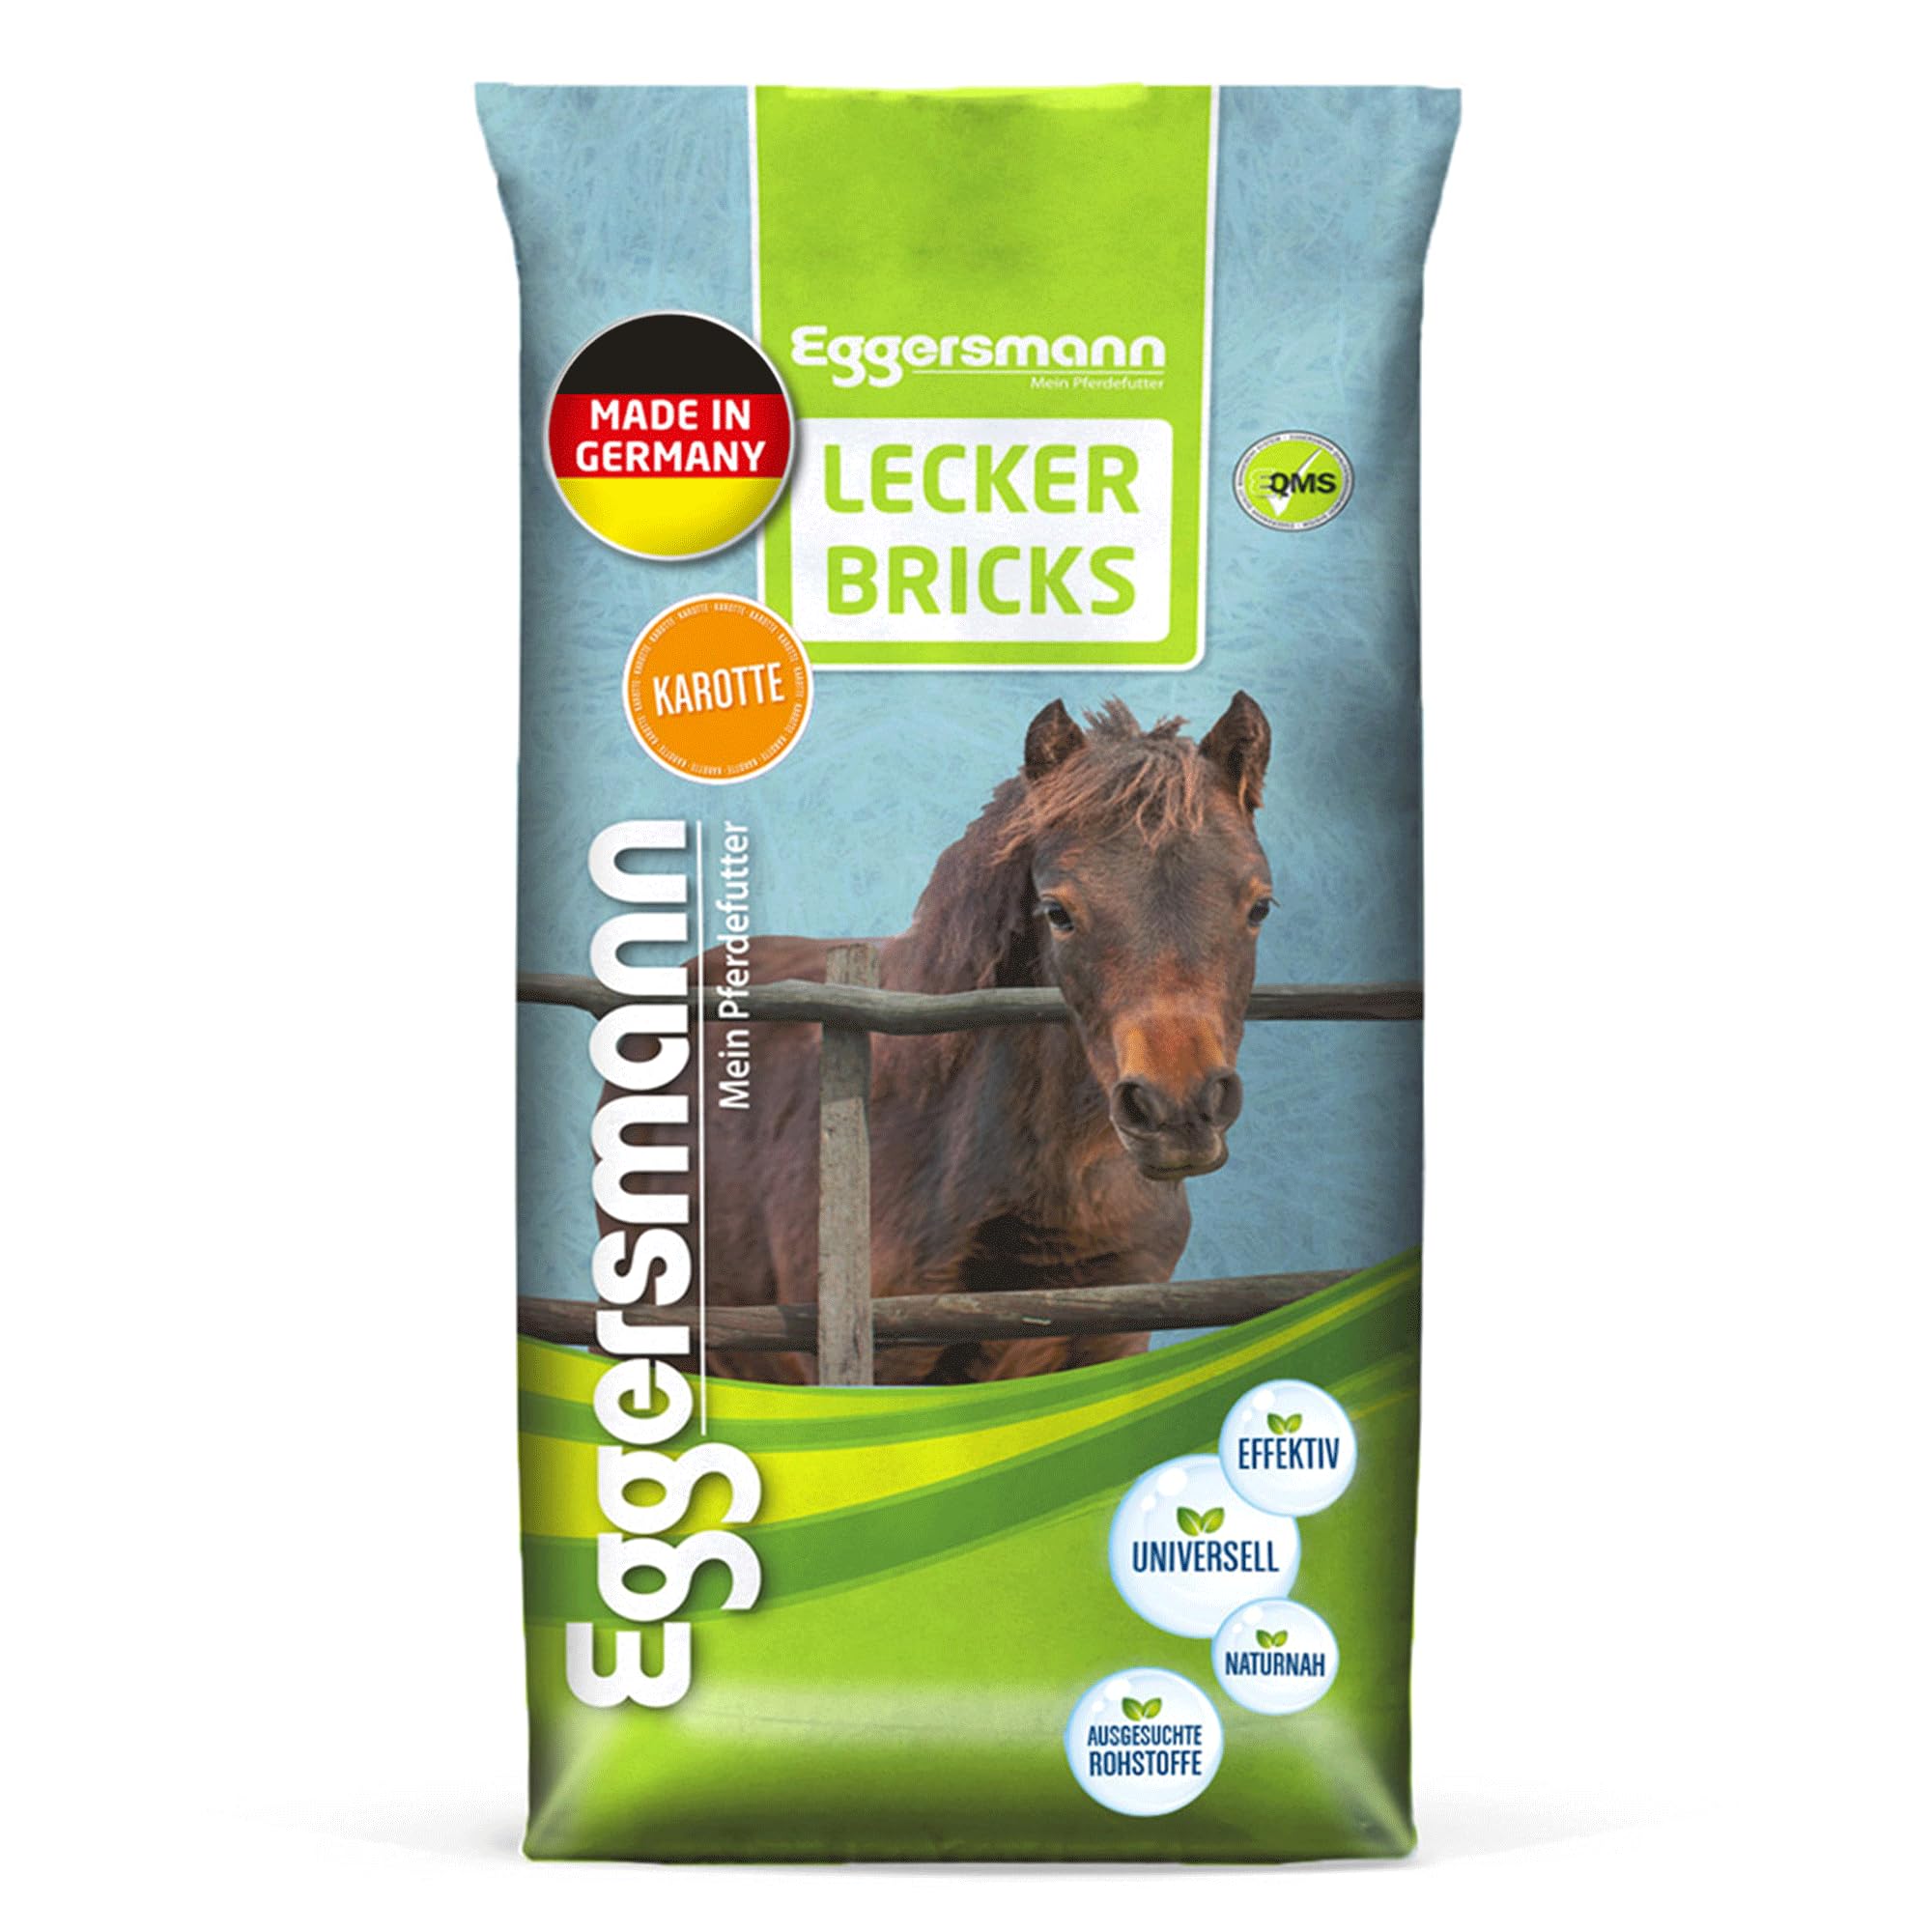 Eggersmann Lecker Bricks Himbeer – Pferdeleckerlis Himbeere – Leckerlies für Pferde und Ponies – 25 kg Sack